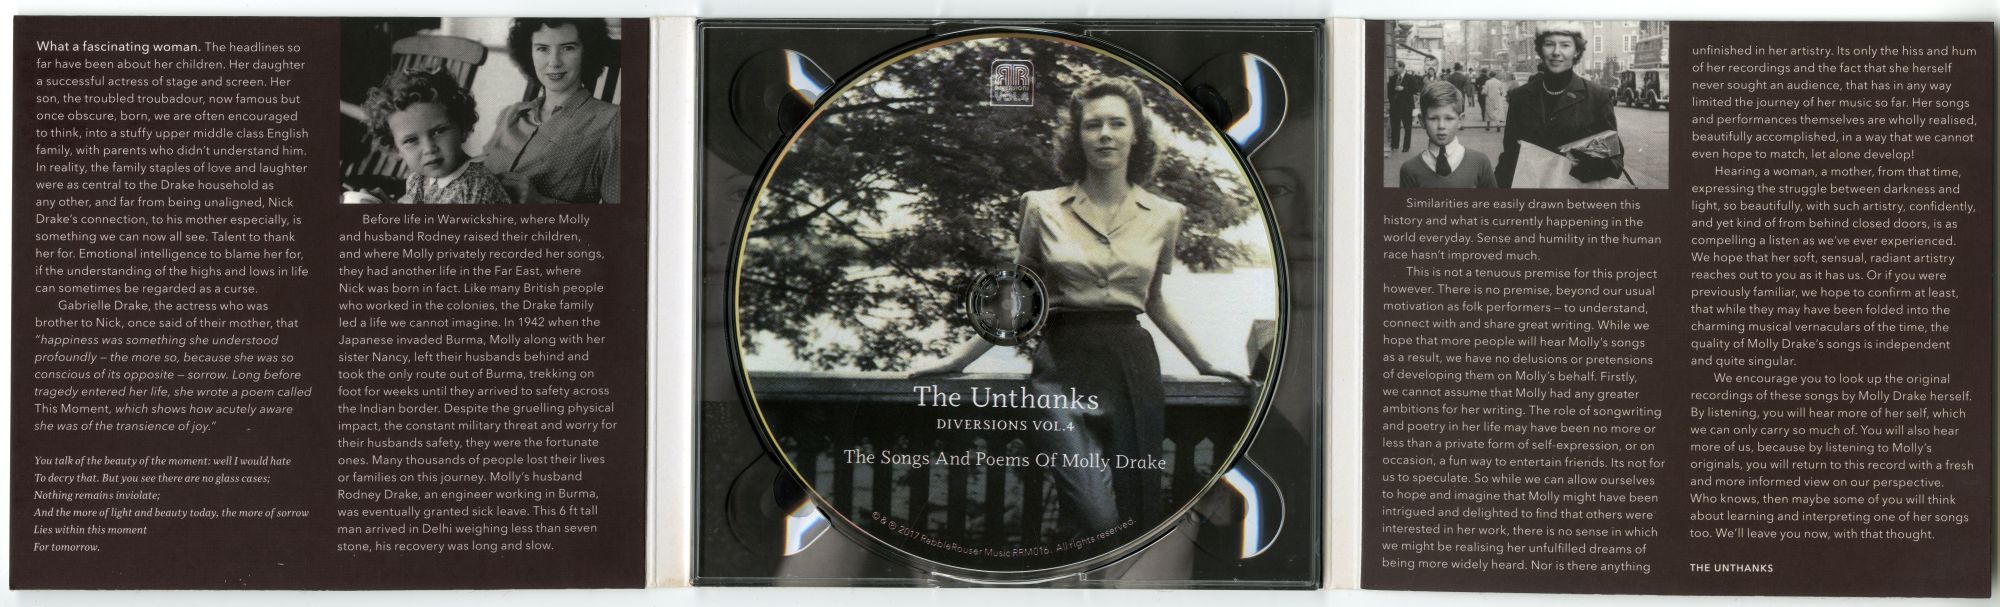 The Unthanks『Diversions, Vol. 4』02